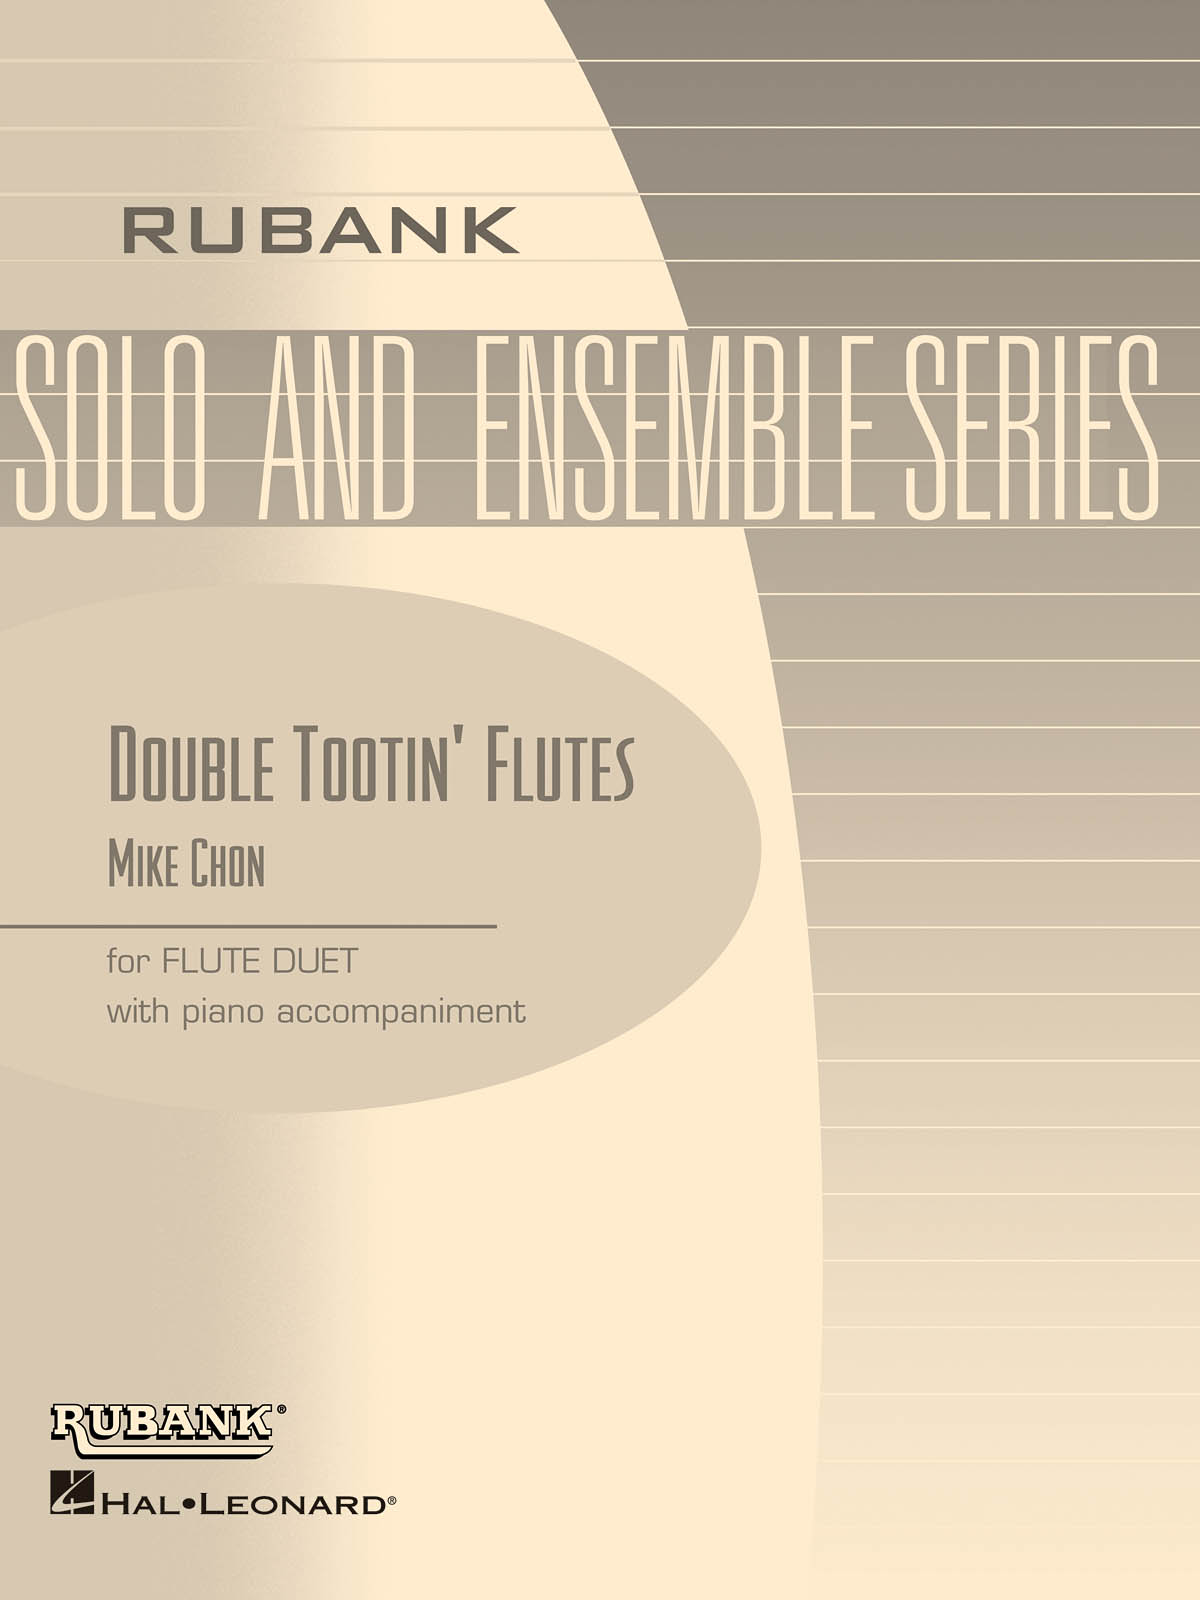 Double Tootin’ Flutes